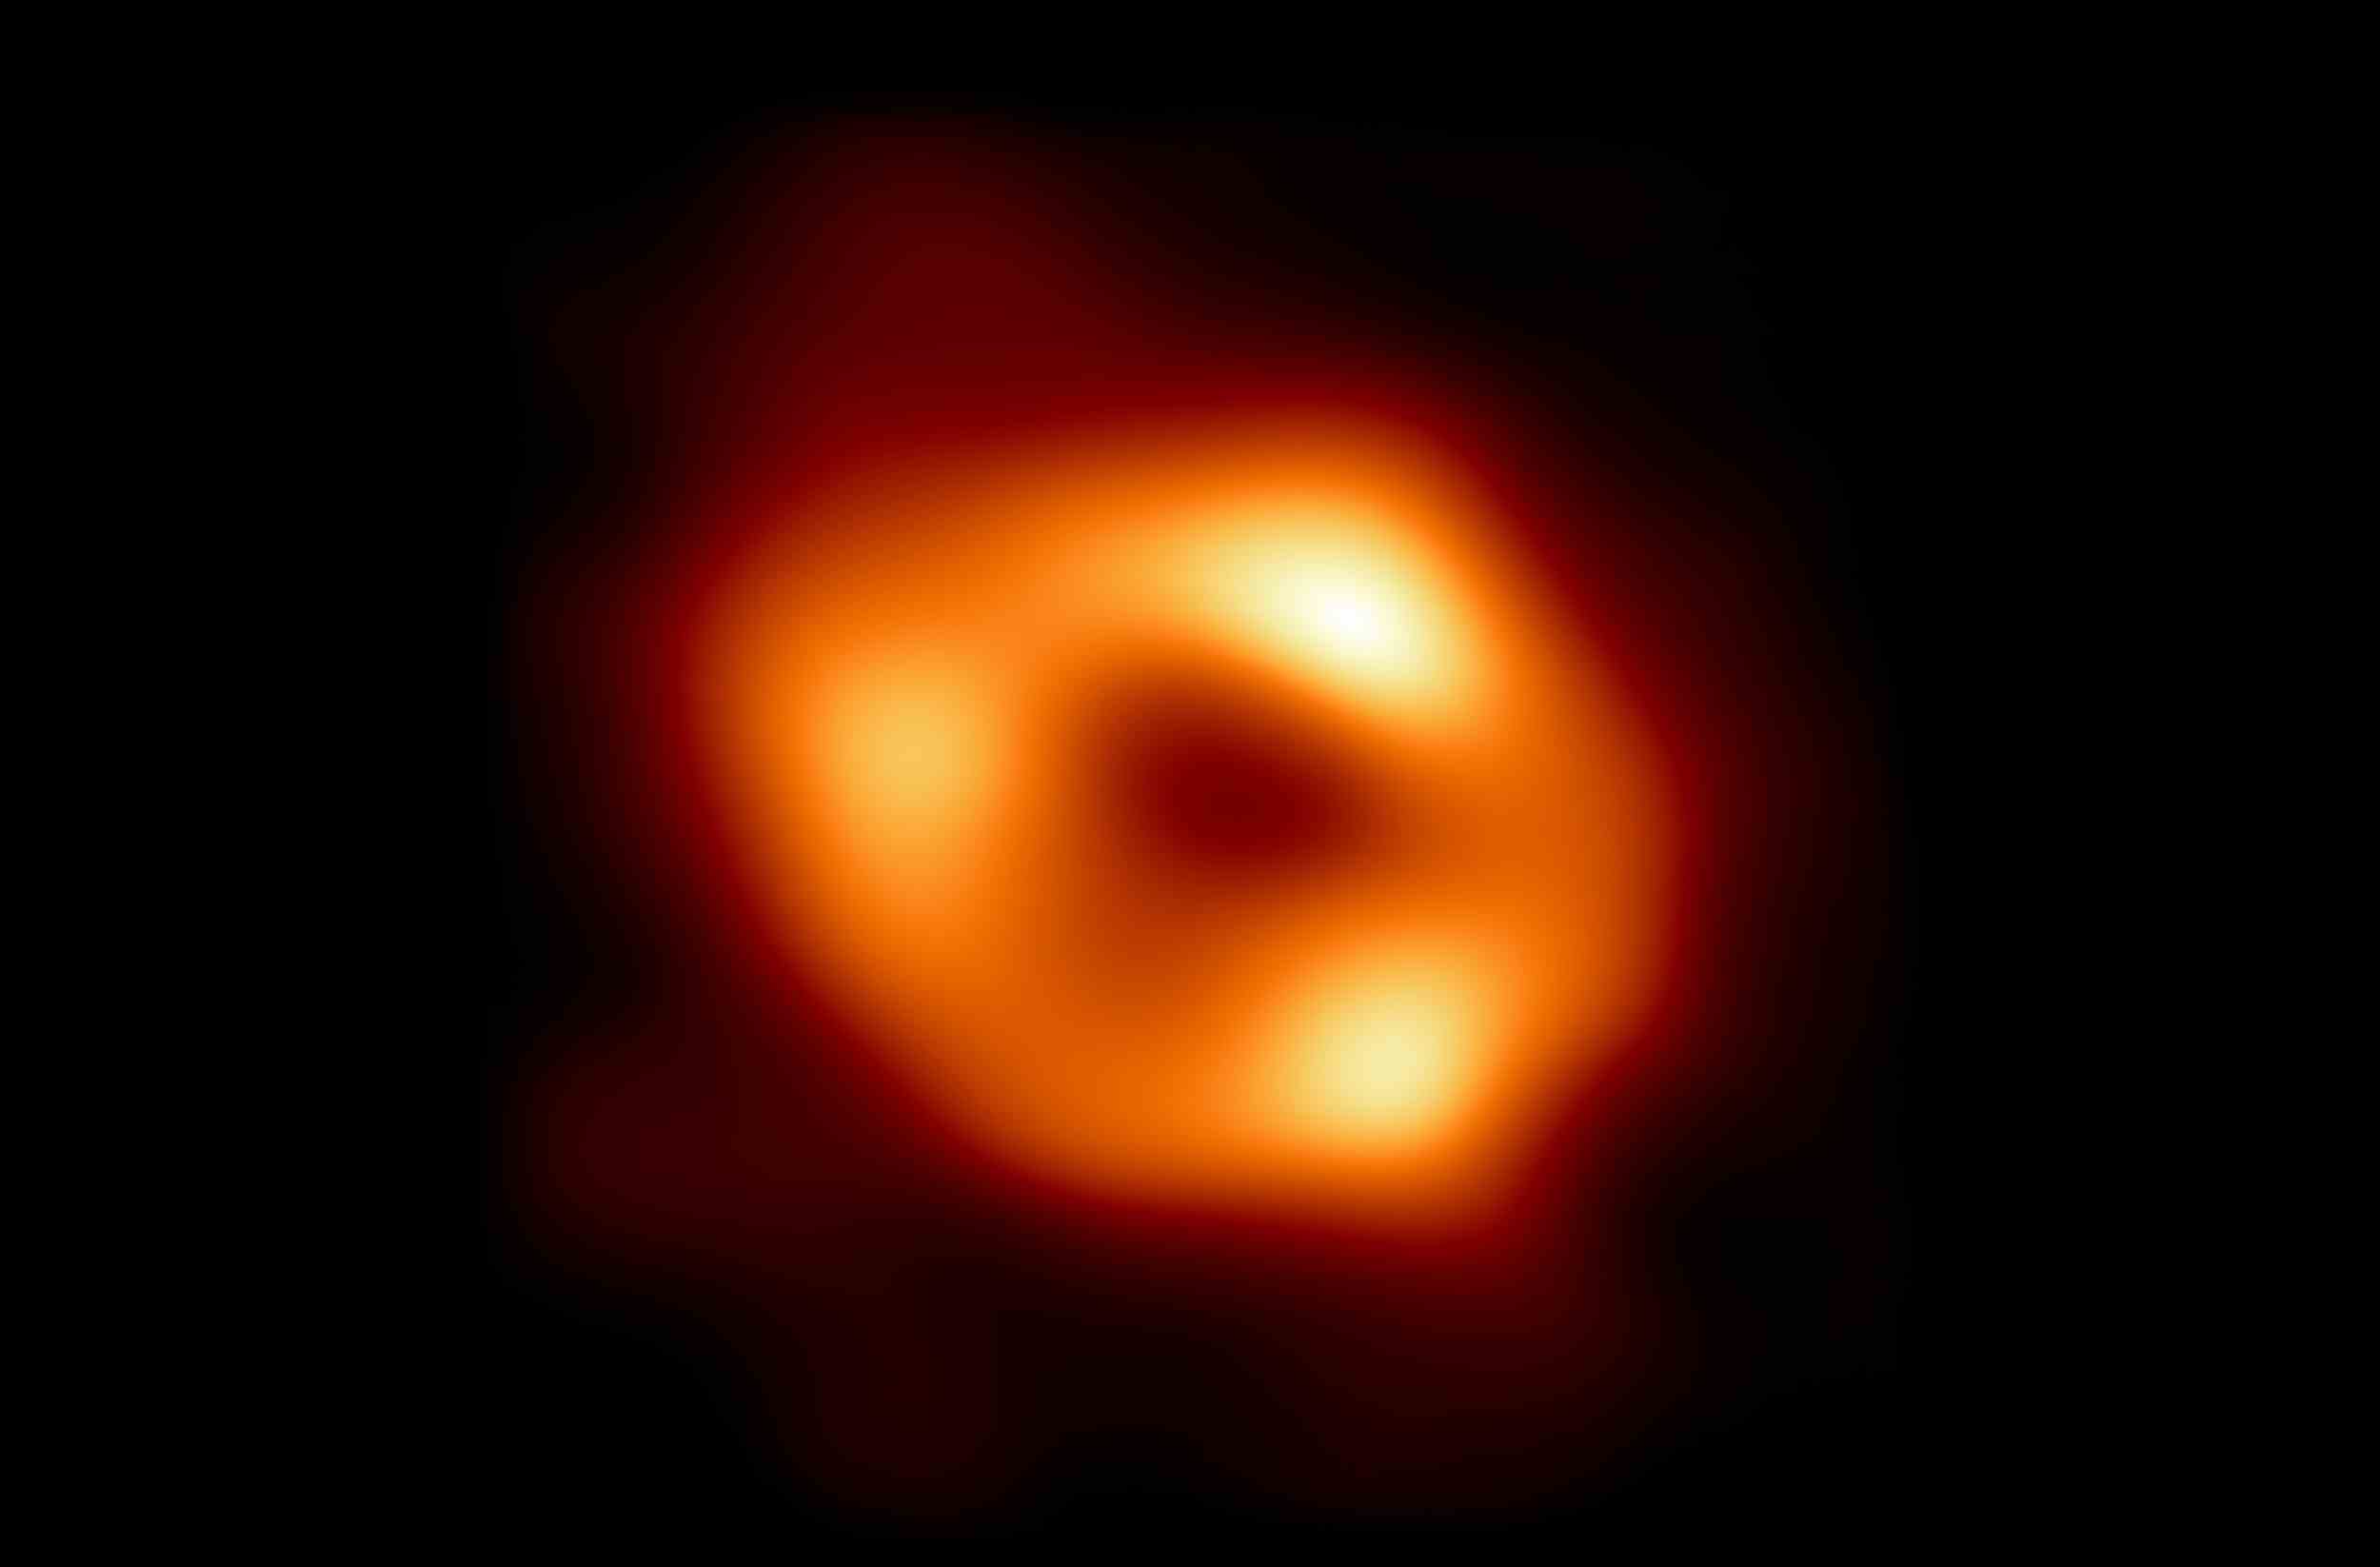 Dies ist das erste Bild von Sgr A*, dem supermassiven Schwarzen Loch im Zentrum unserer Galaxie.